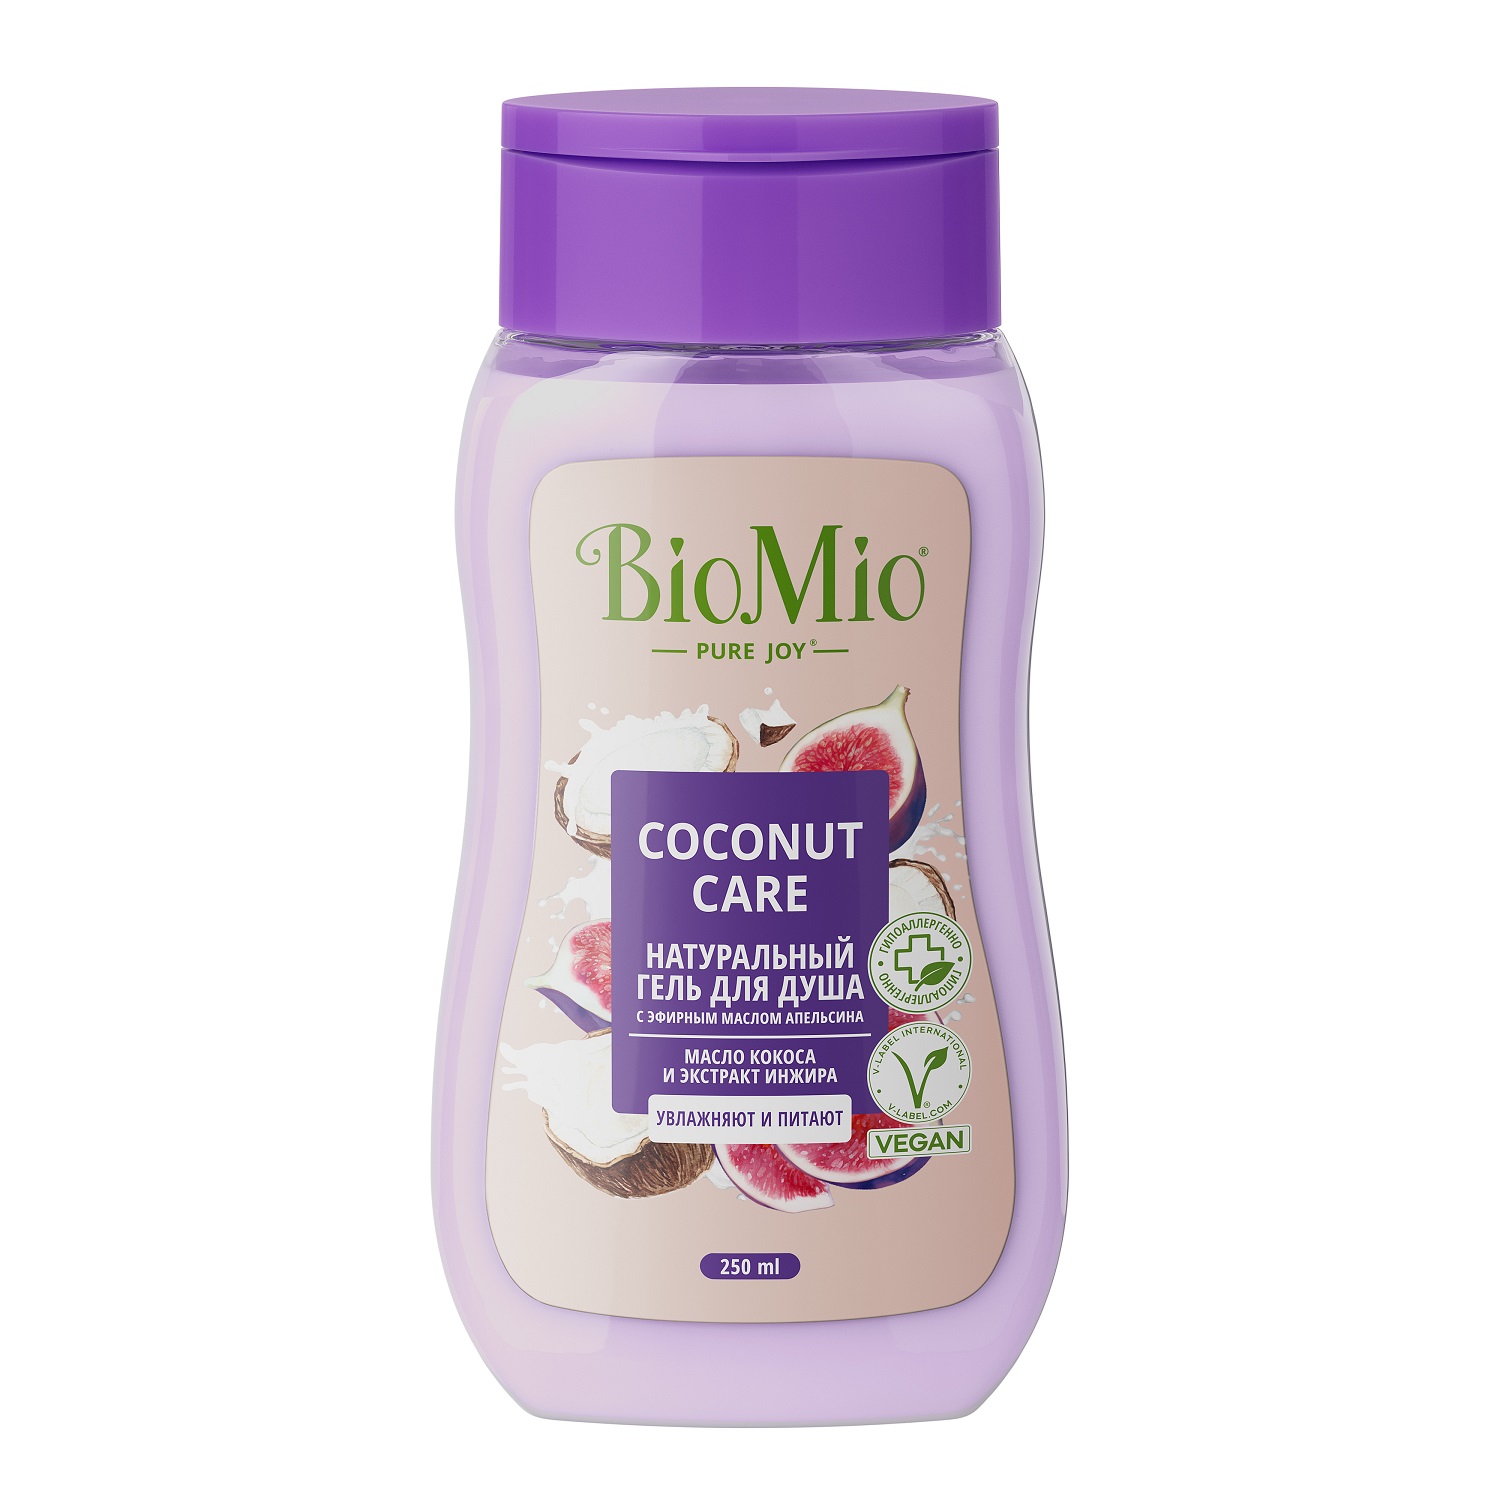 BioMio Гель для душа с экстрактом инжира и маслом кокоса Coconut Care для всей семьи 14+, 250 мл (BioMio, Для ванны и душа)